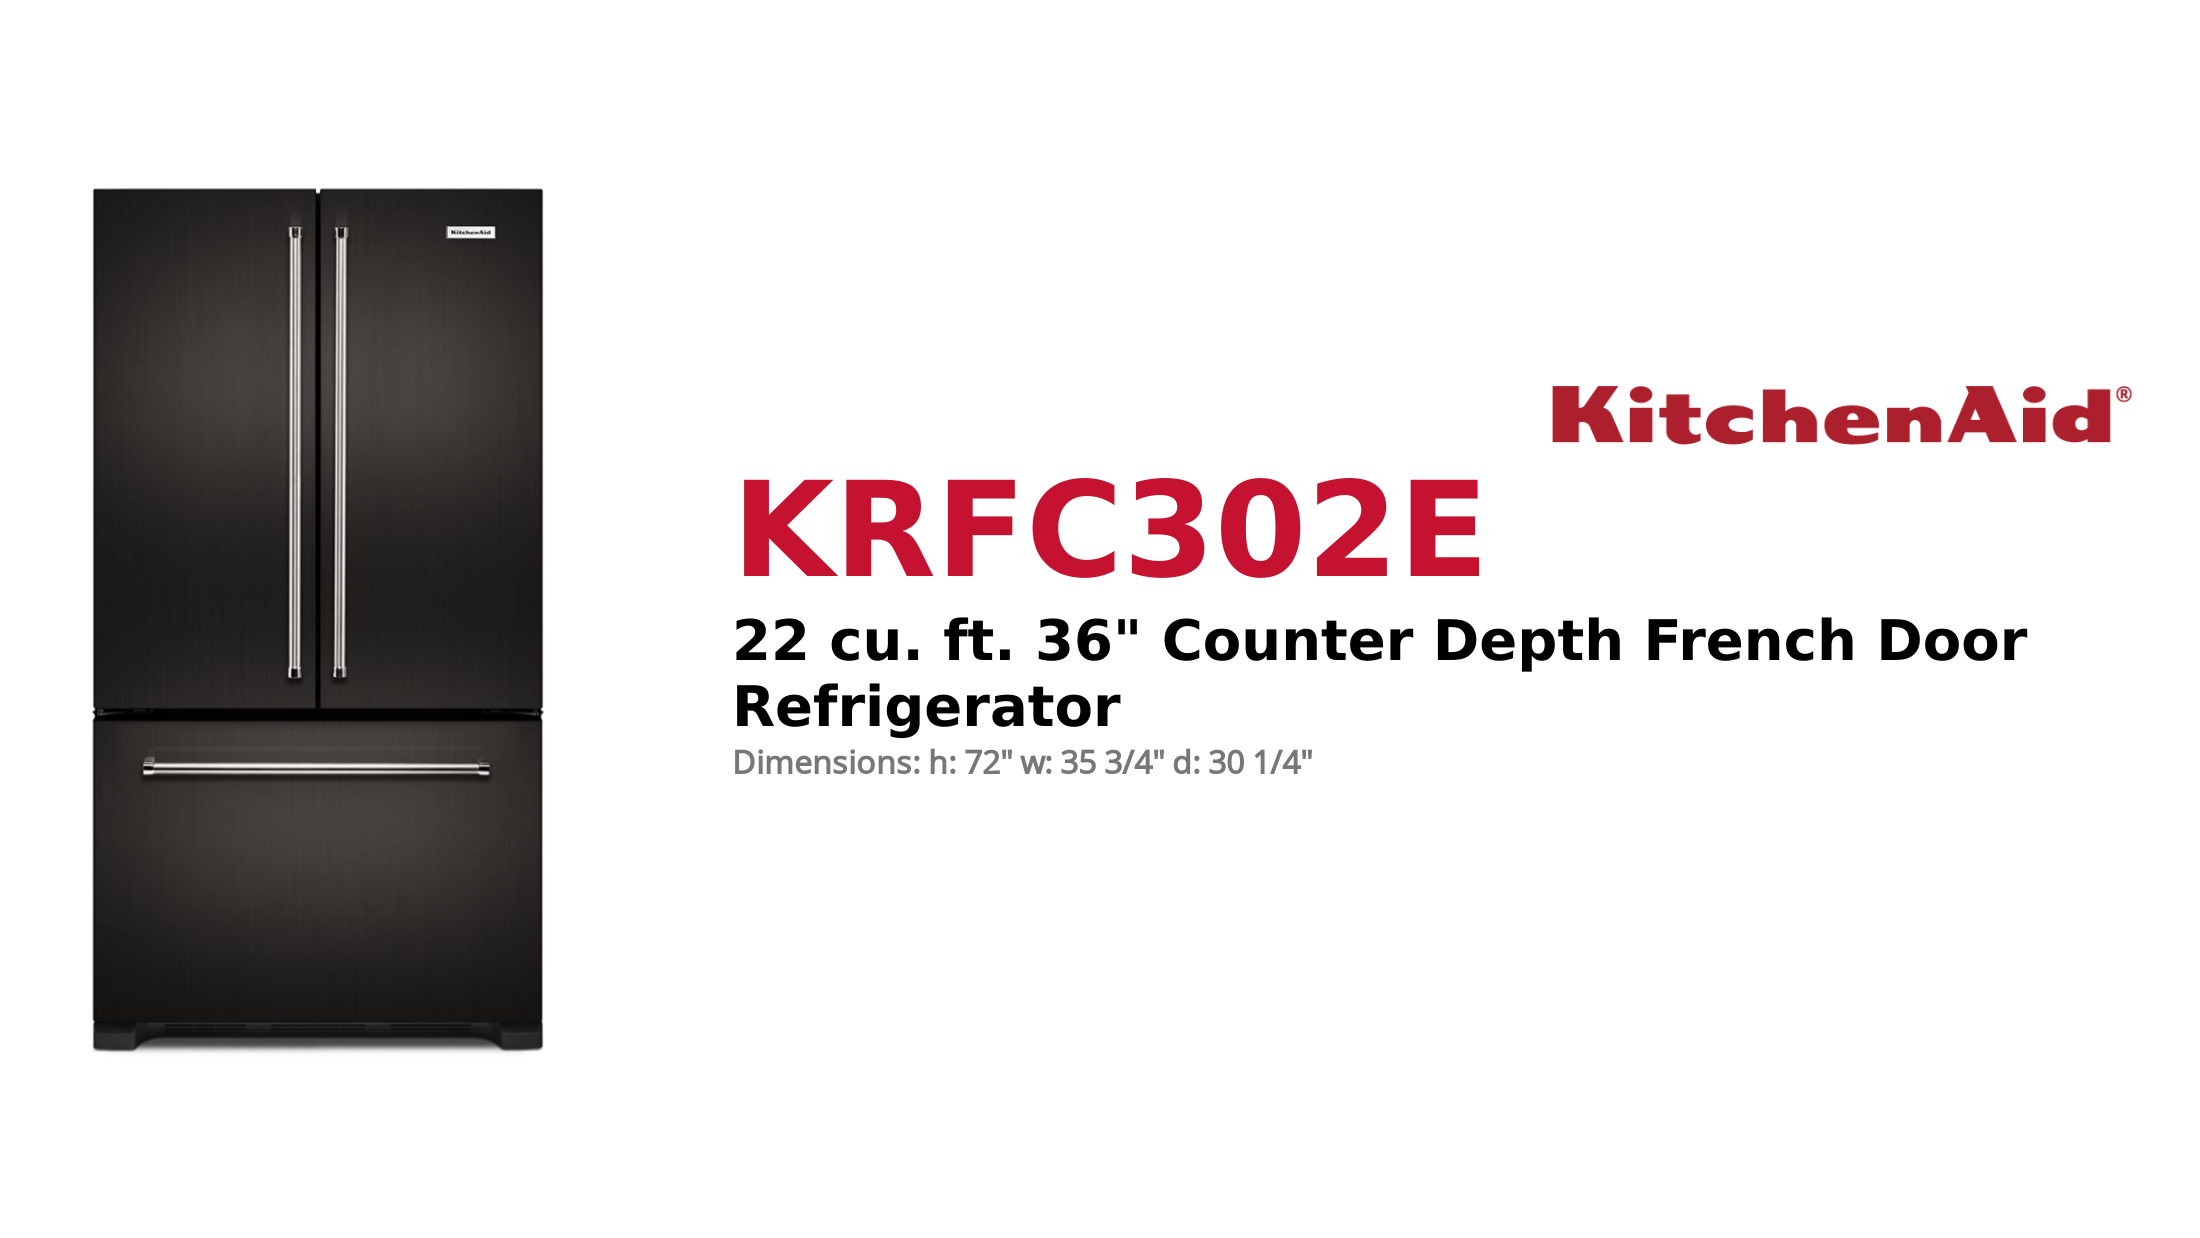 22 cu. ft. 36 Counter Depth French Door Refrigerator